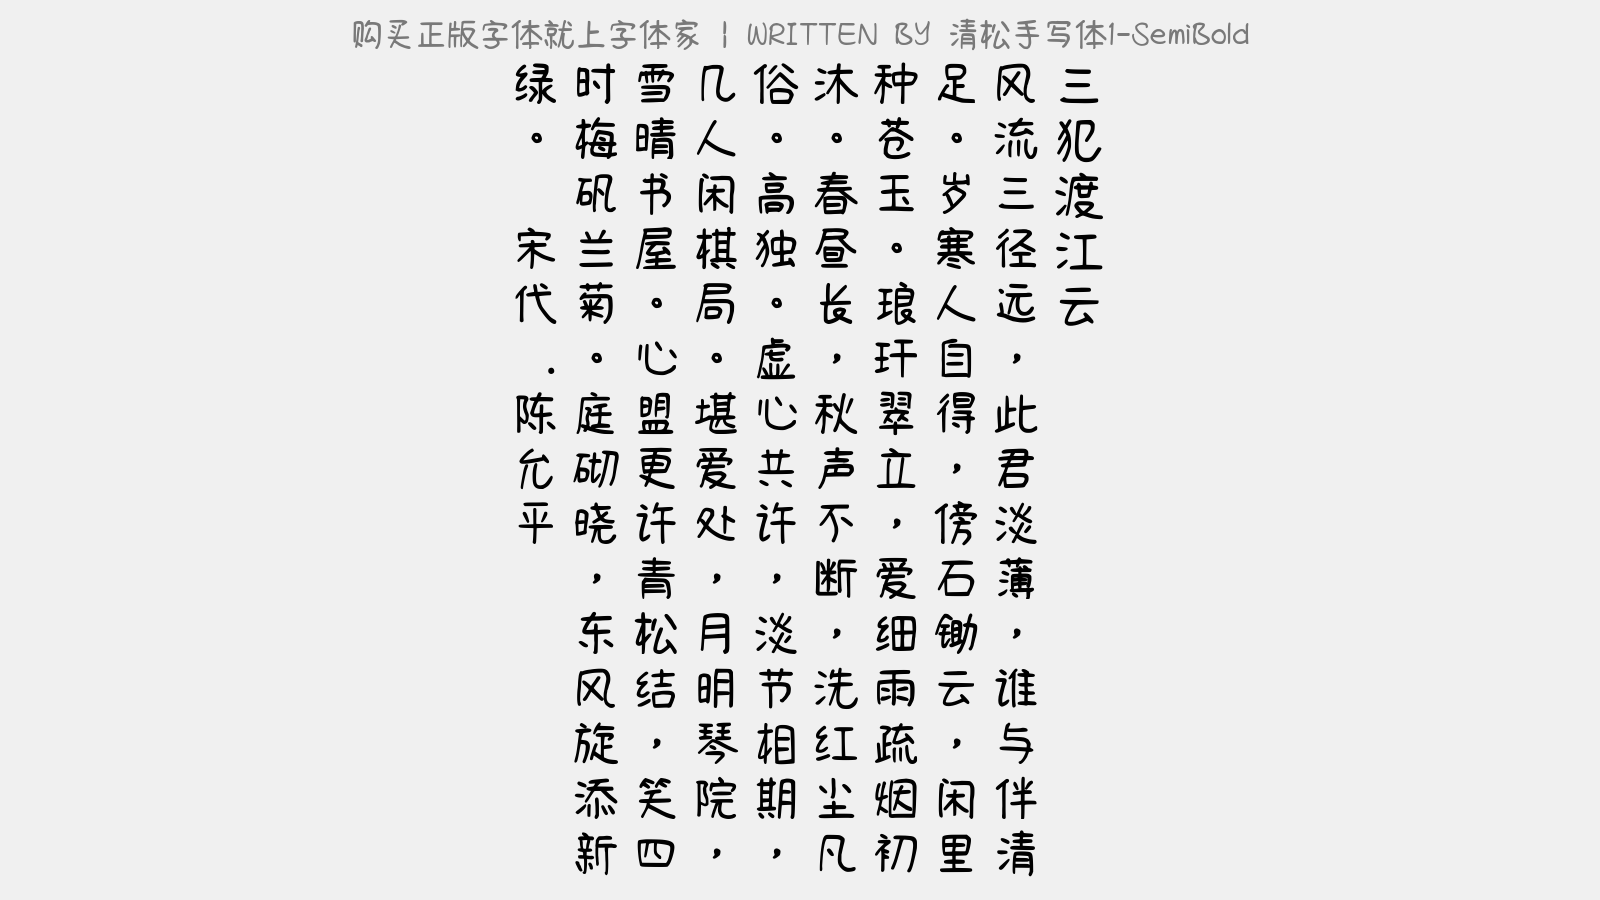 清松手写体1 Semibold免费字体下载 中文字体免费下载尽在字体家